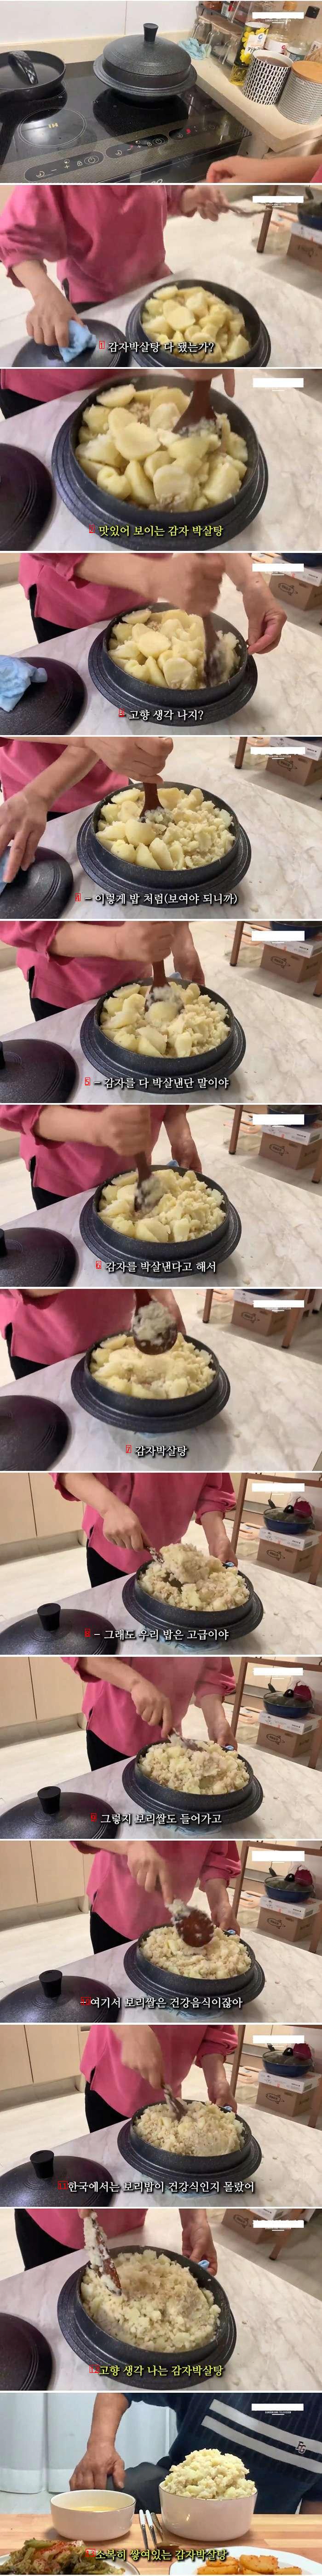 脱北者たちも食べるのが難しい北朝鮮の庶民の食べ物